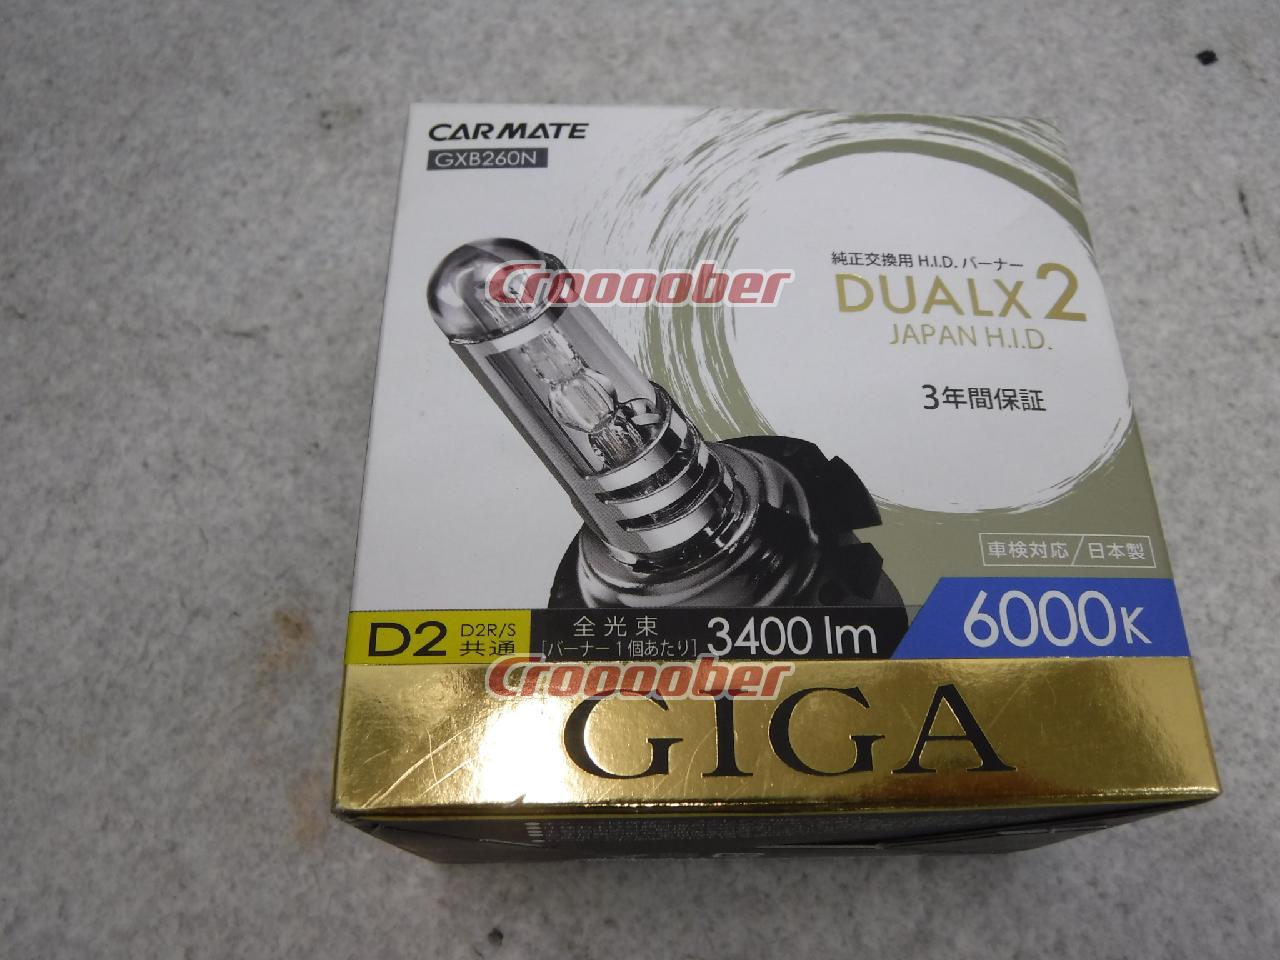 GXB260N】CARMATE(カーメイト) GIGA デュアルクス2 6000k D2R/S 